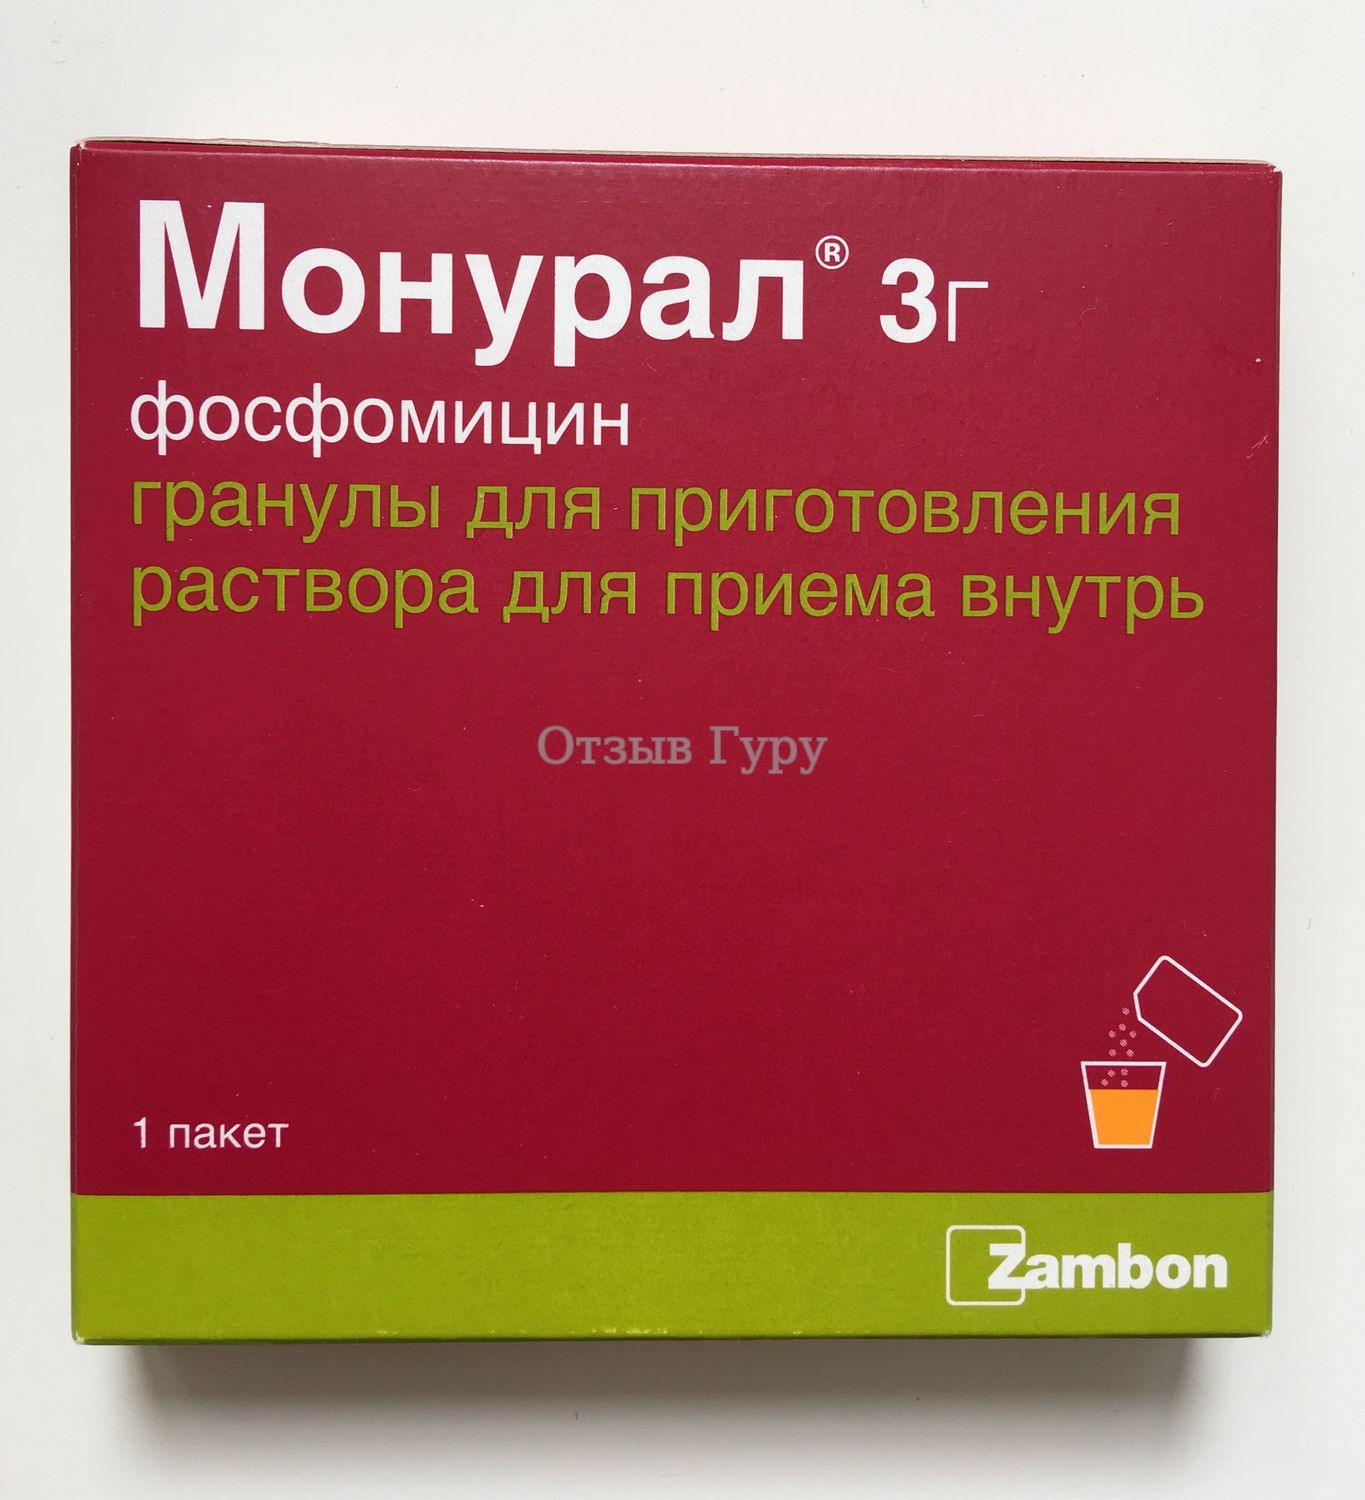 Порошок Монурал (инструкция по применению при цистите) - Антибиотики .